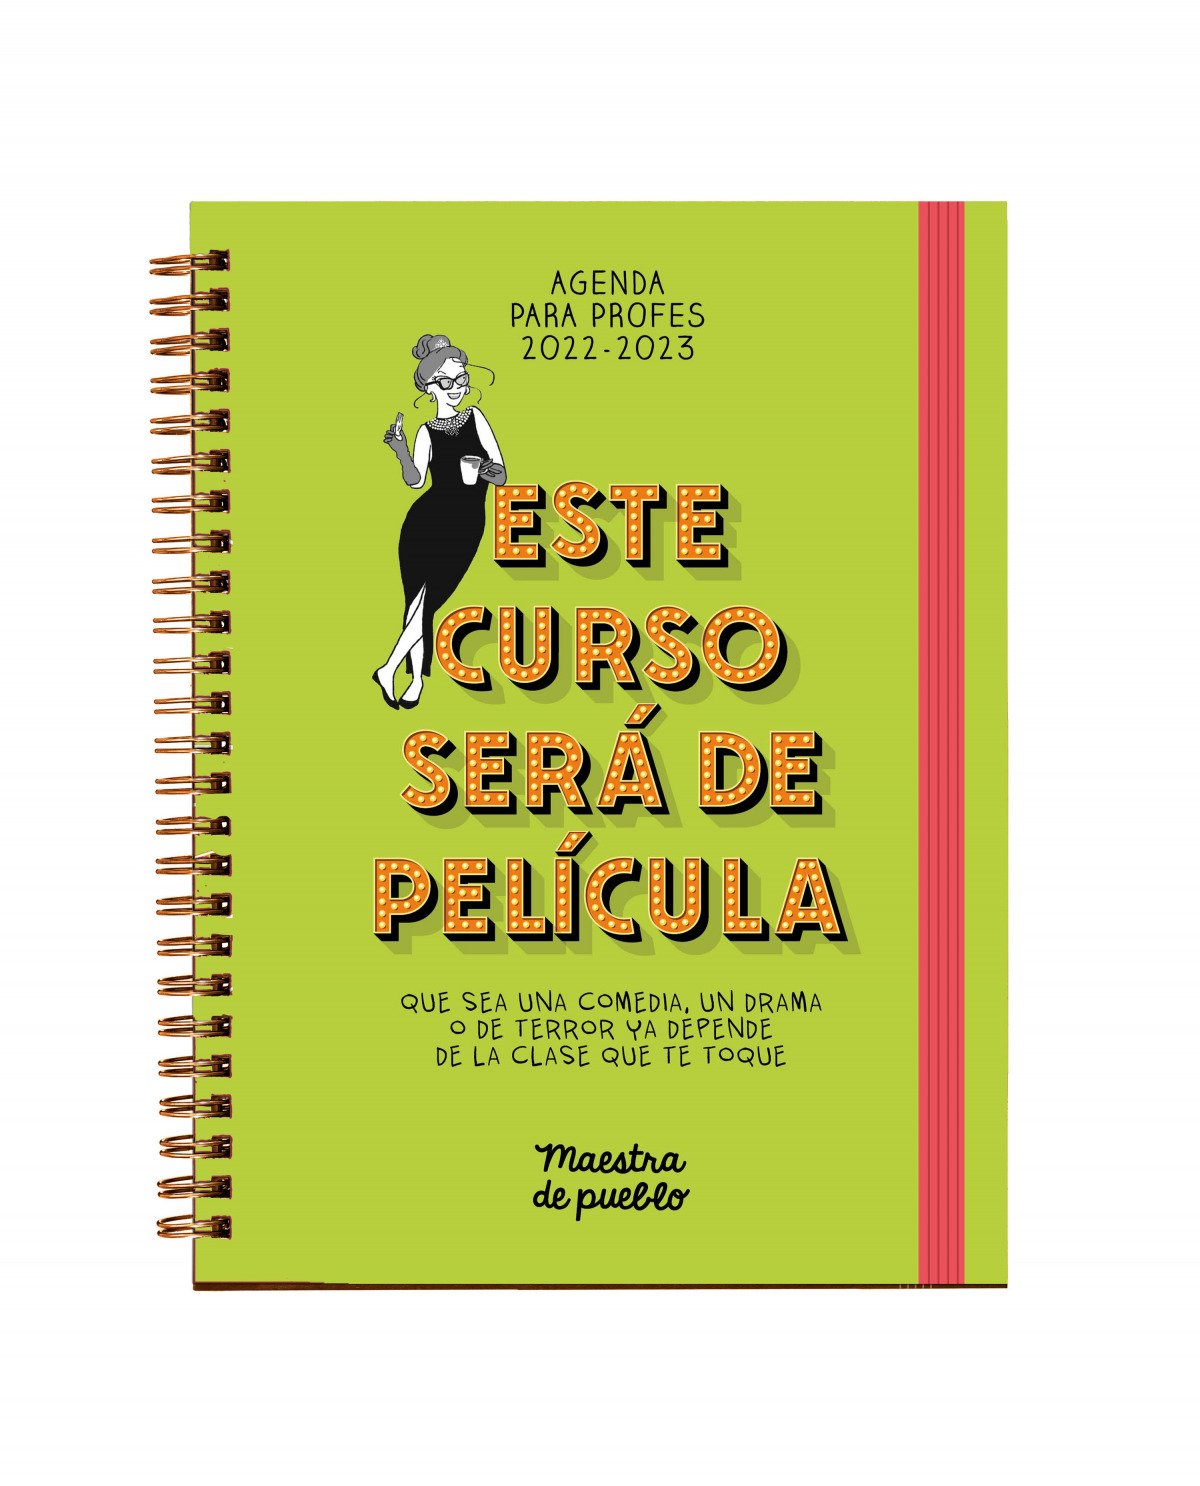 Preguntarse Especialidad Bajar Agenda Maestra de Pueblo 2022/2023 - Libreria Didot